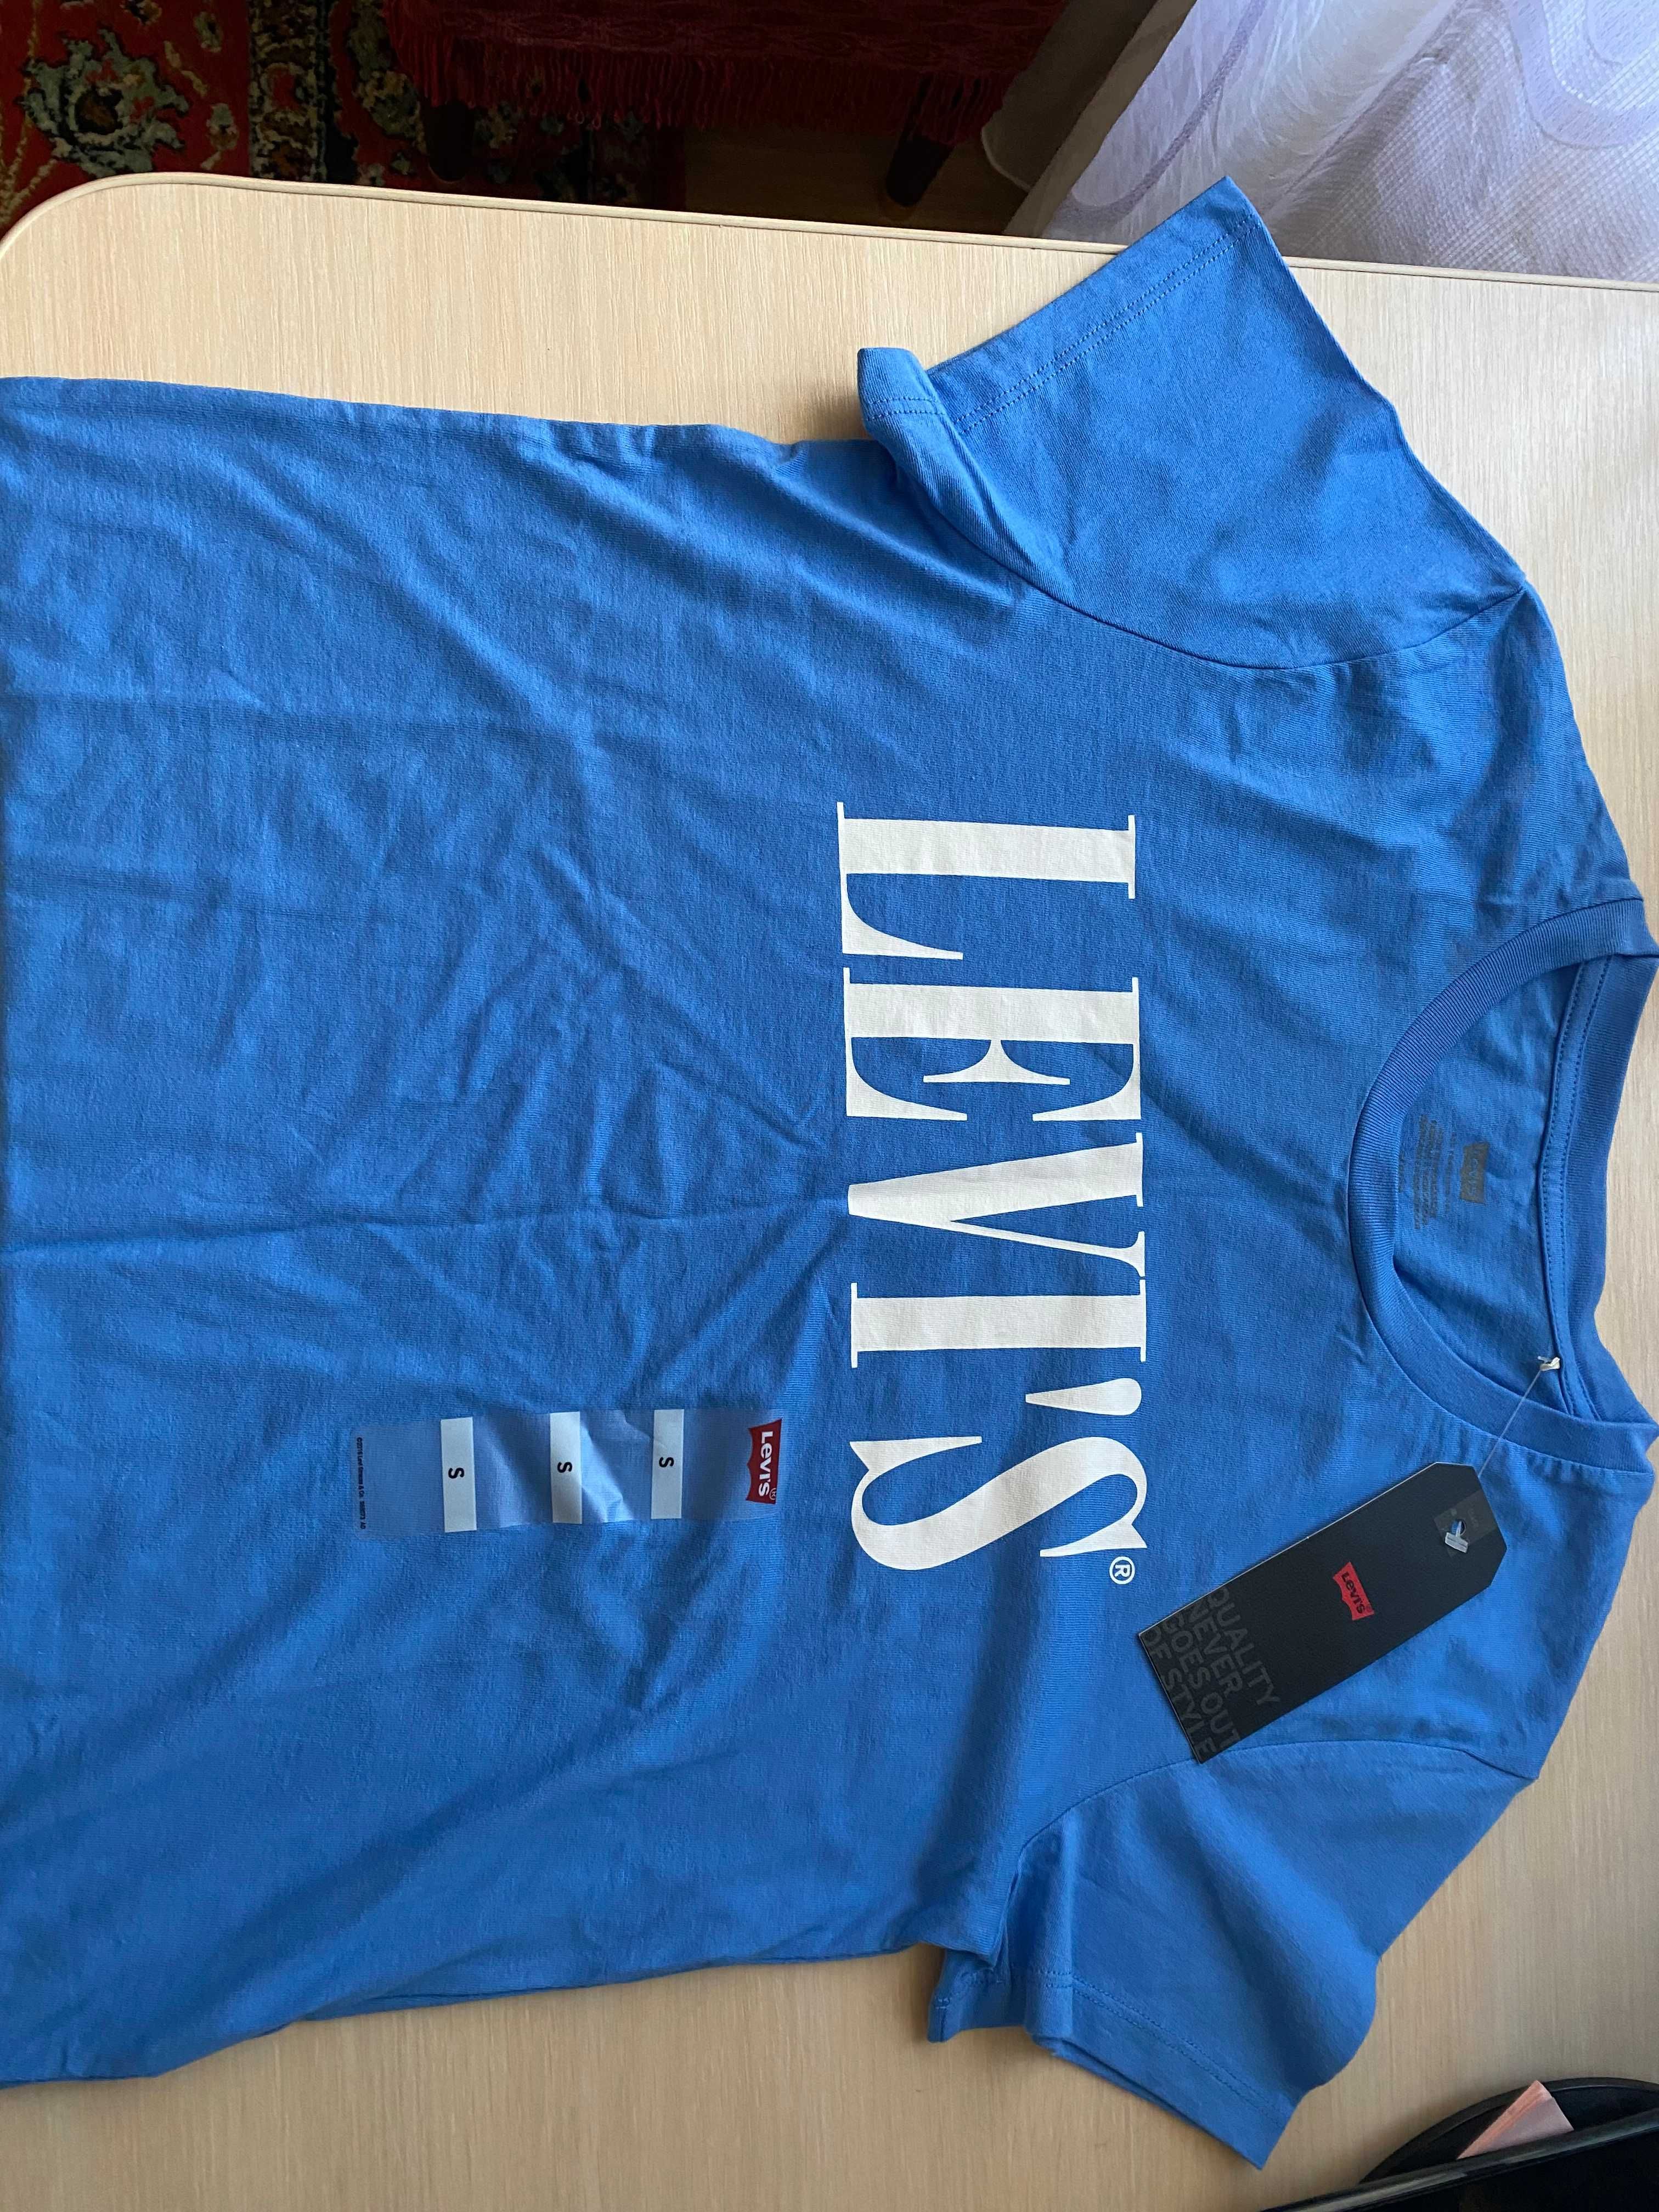 Продам футболку Levi's. Размер S. Купил в США, в магазине Levi's.